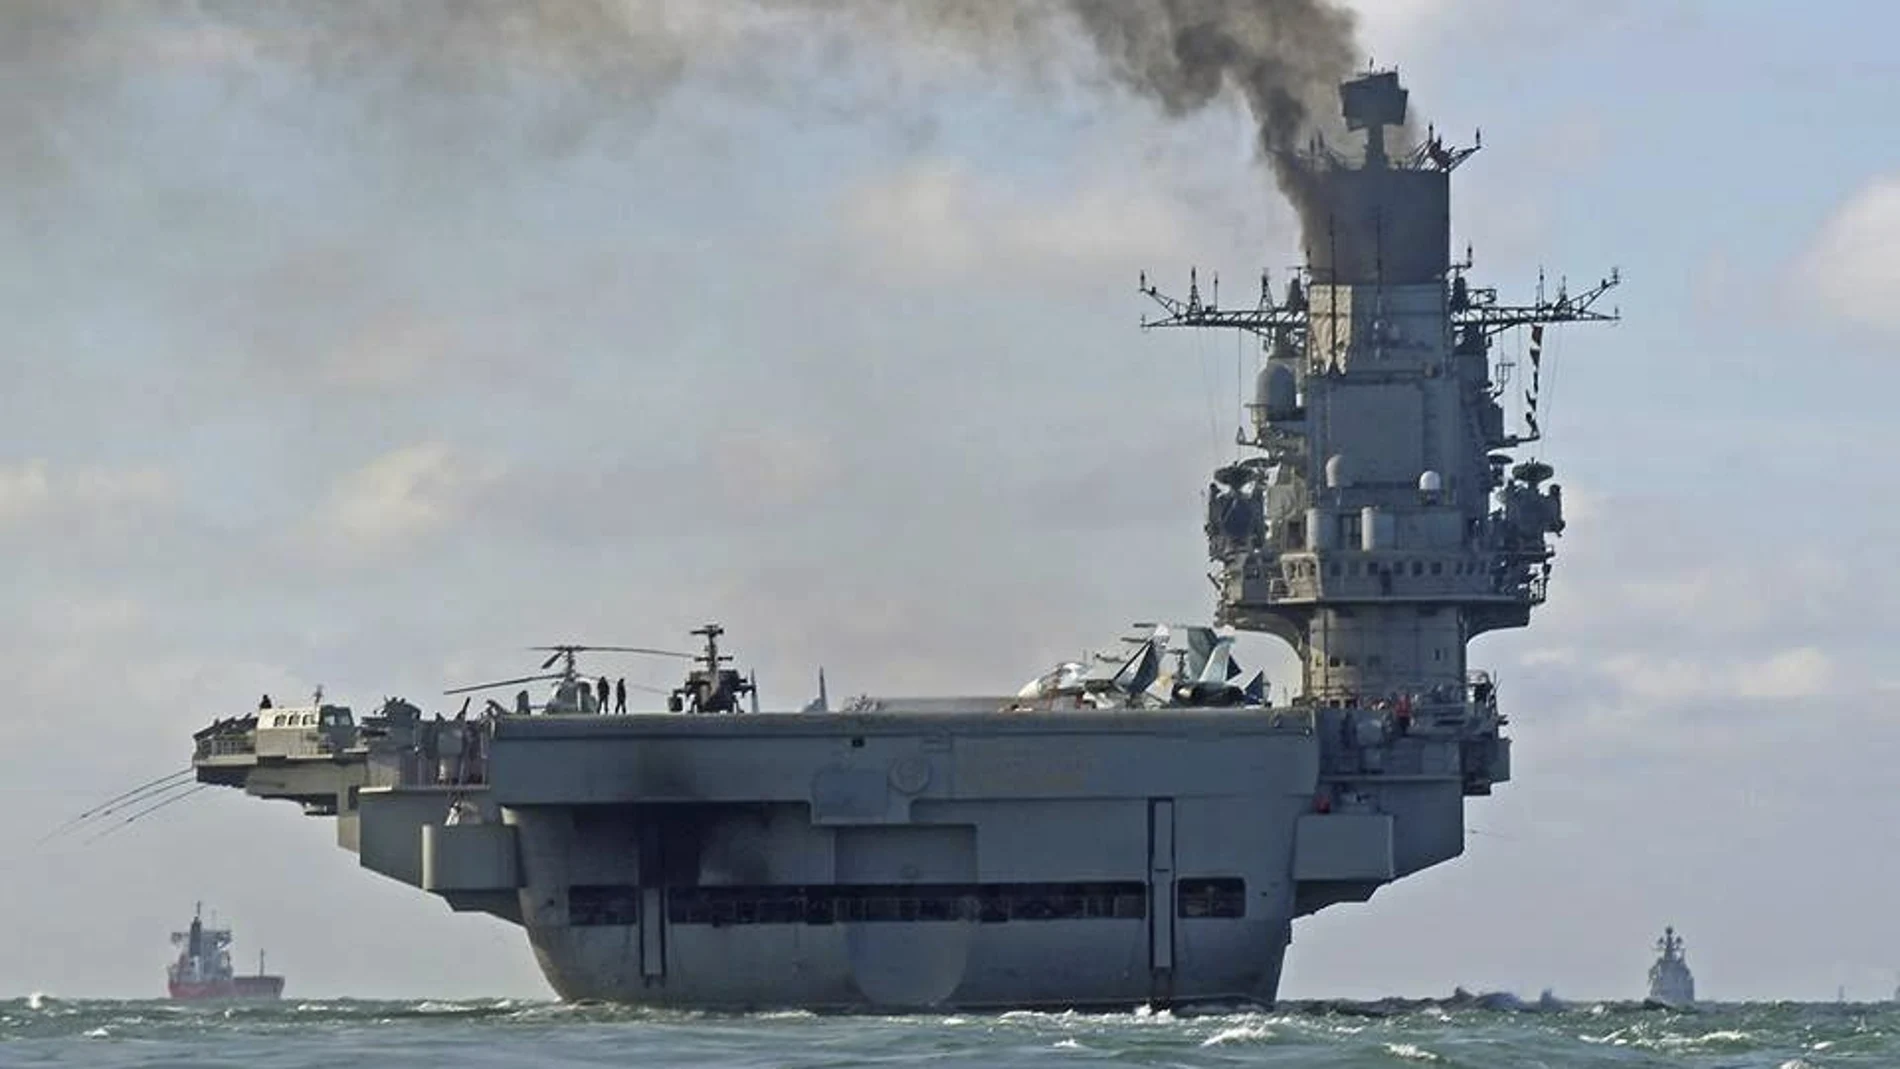 El portaaviones Almirante Kuznetsov entró en servicio en 1991 y su primera acción de combate tuvo lugar en la guerra de Siria en 2016